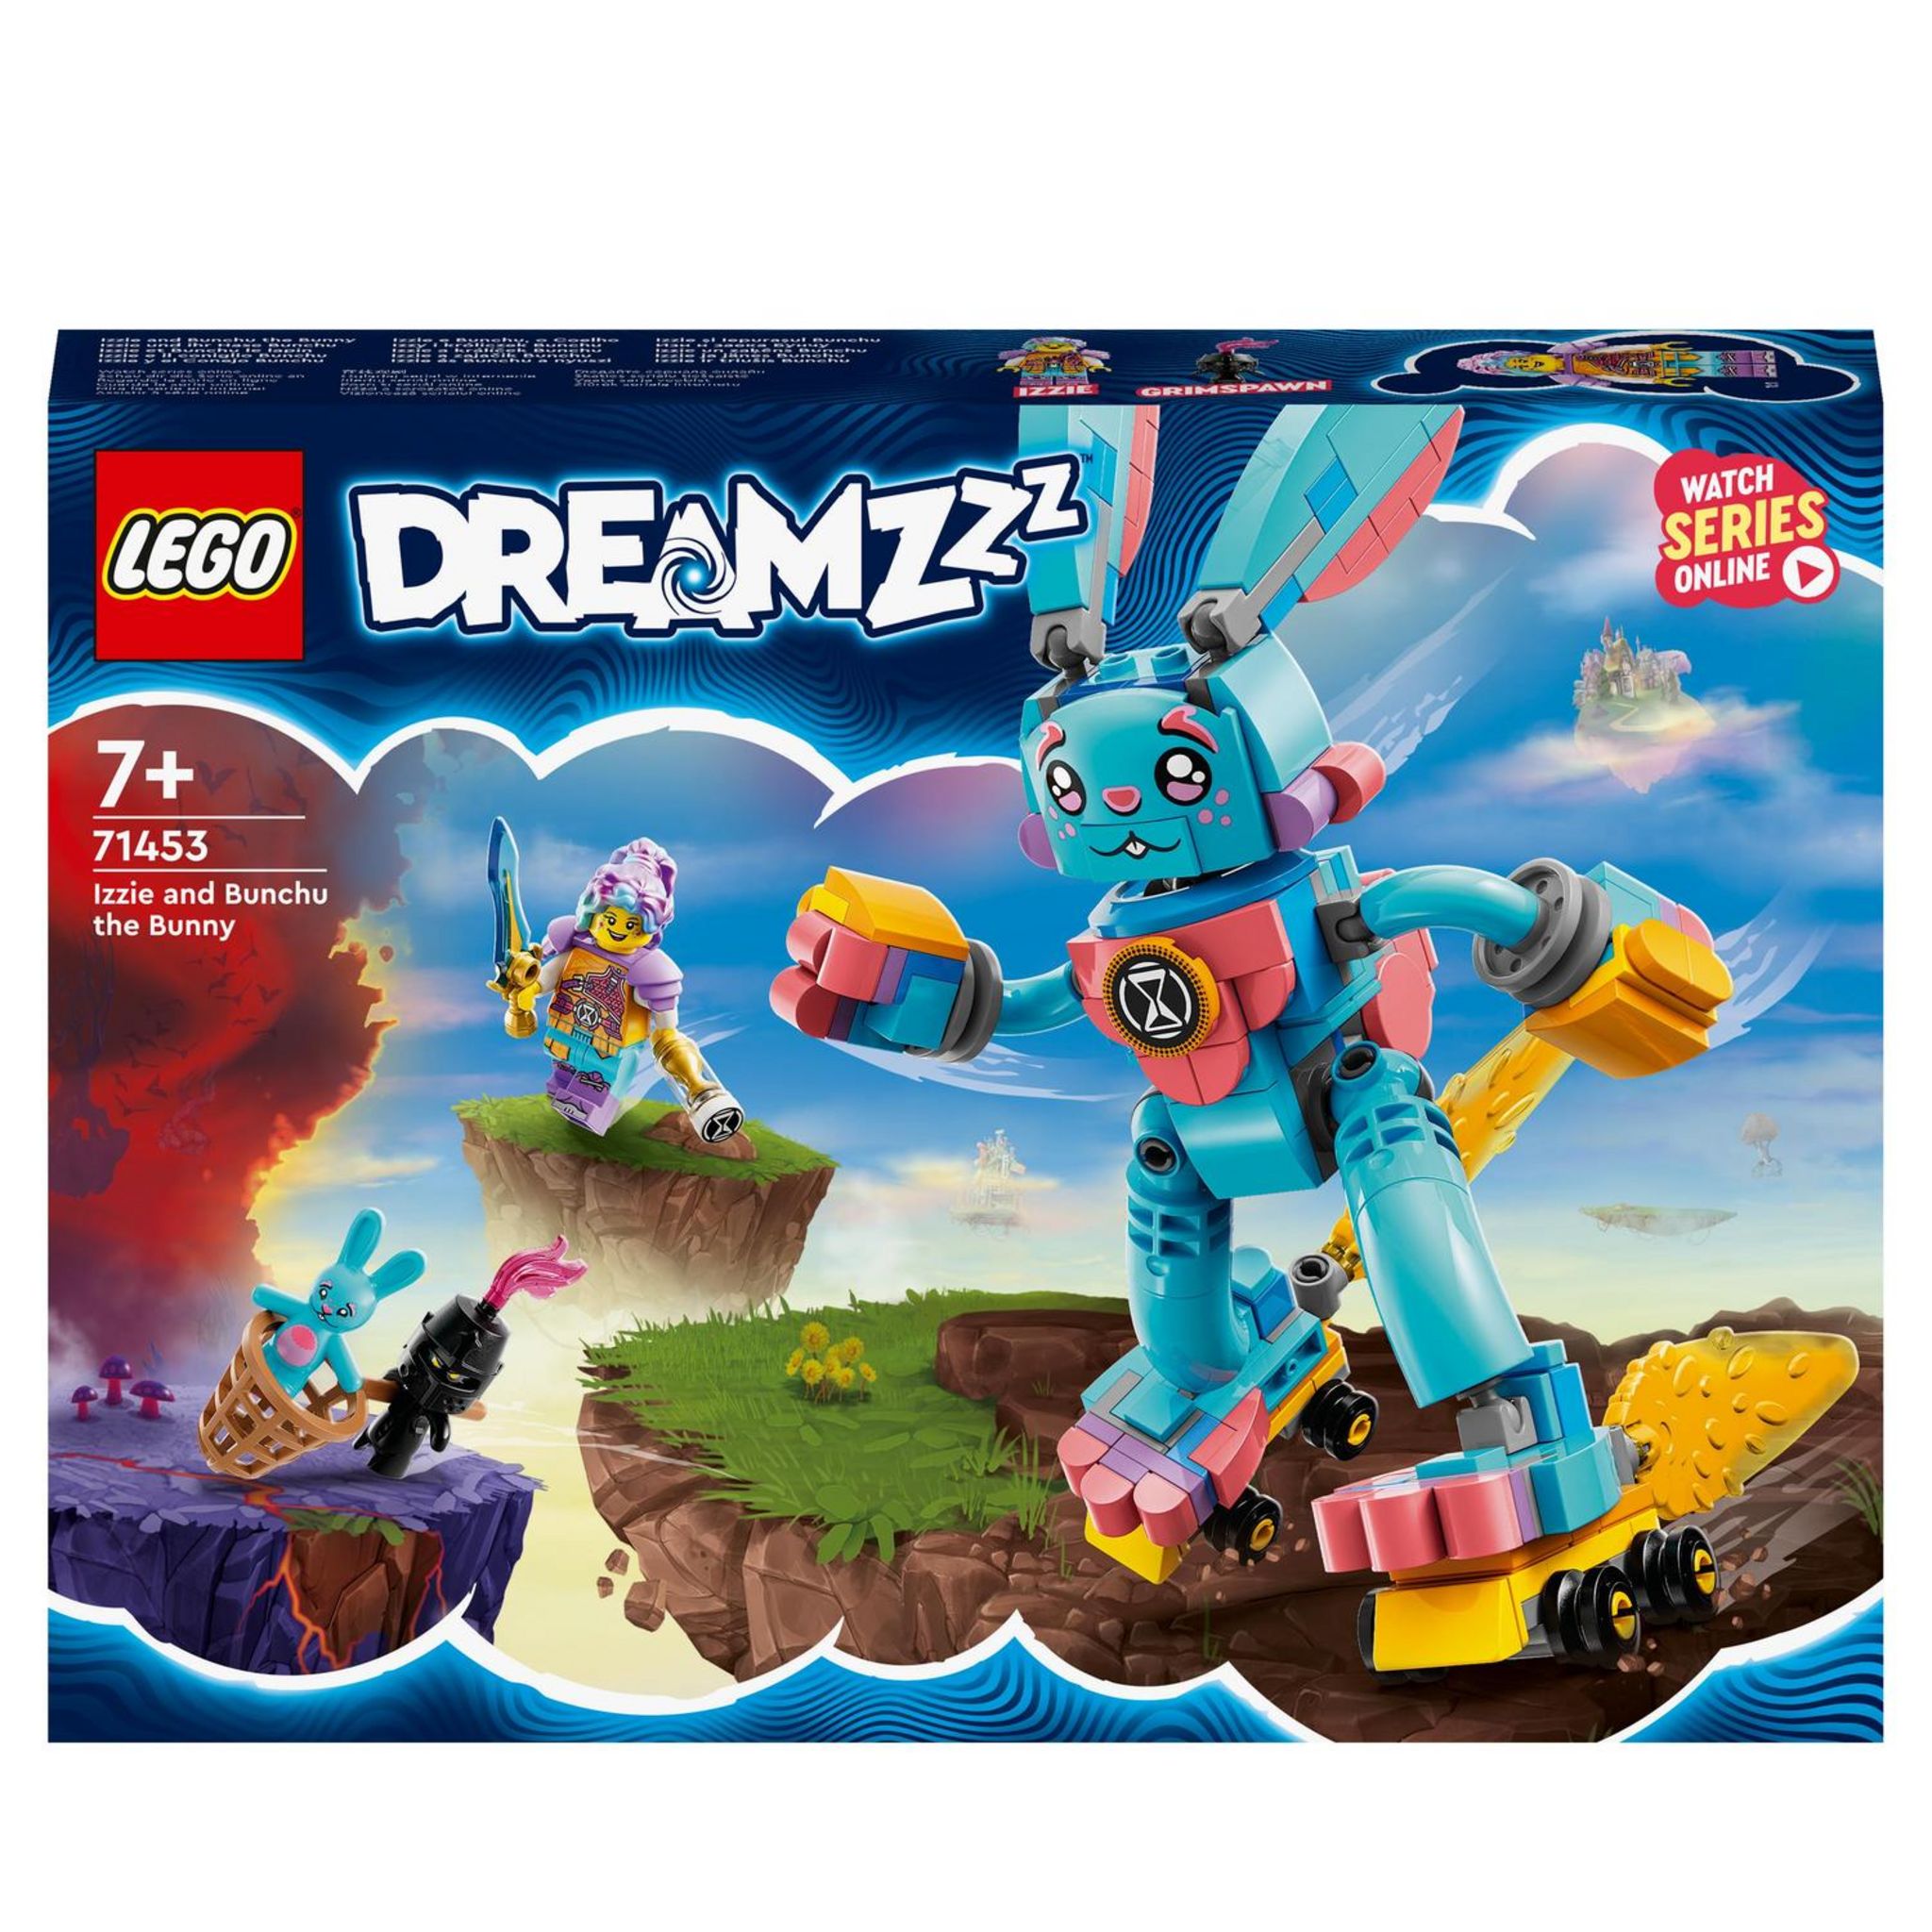 LEGO DREAMZzz 71461 La cabane fantastique dans l'arbre, Commandez  facilement en ligne